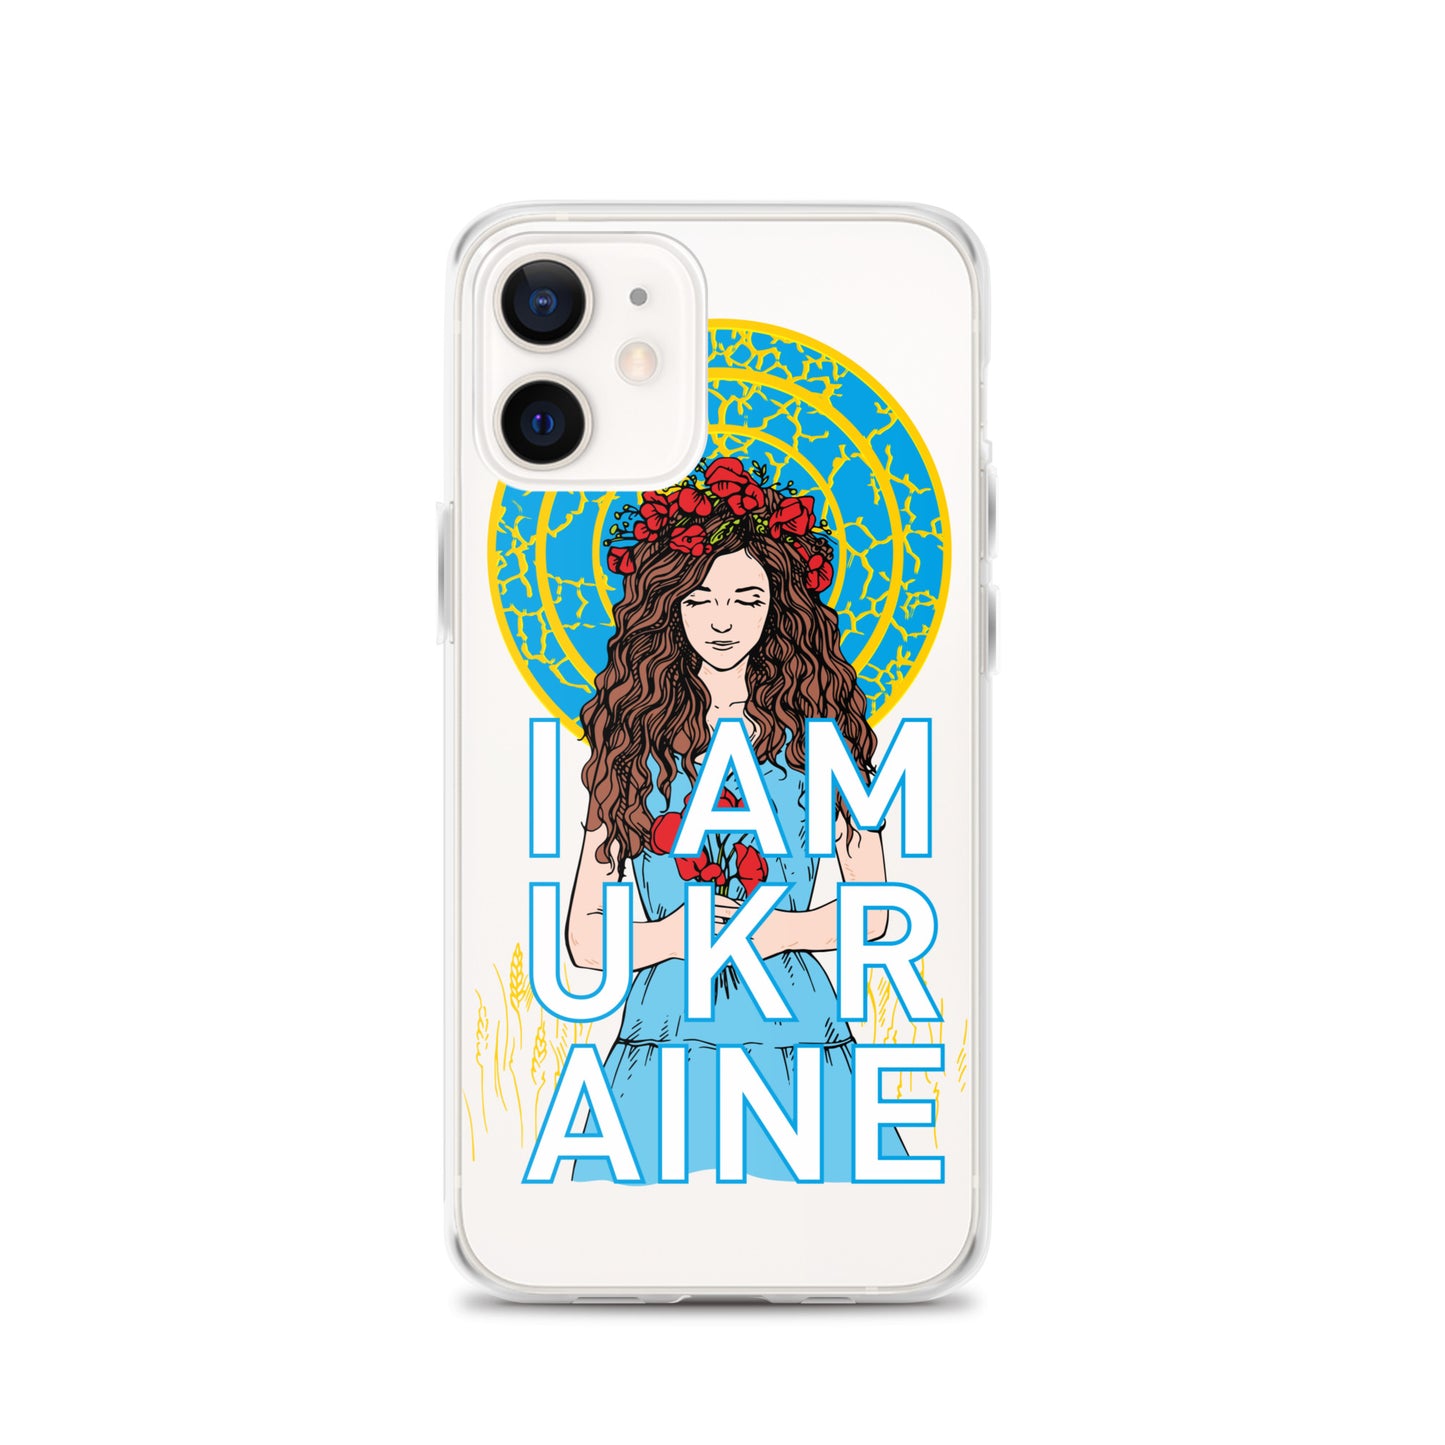 Ukraine iPhone Case